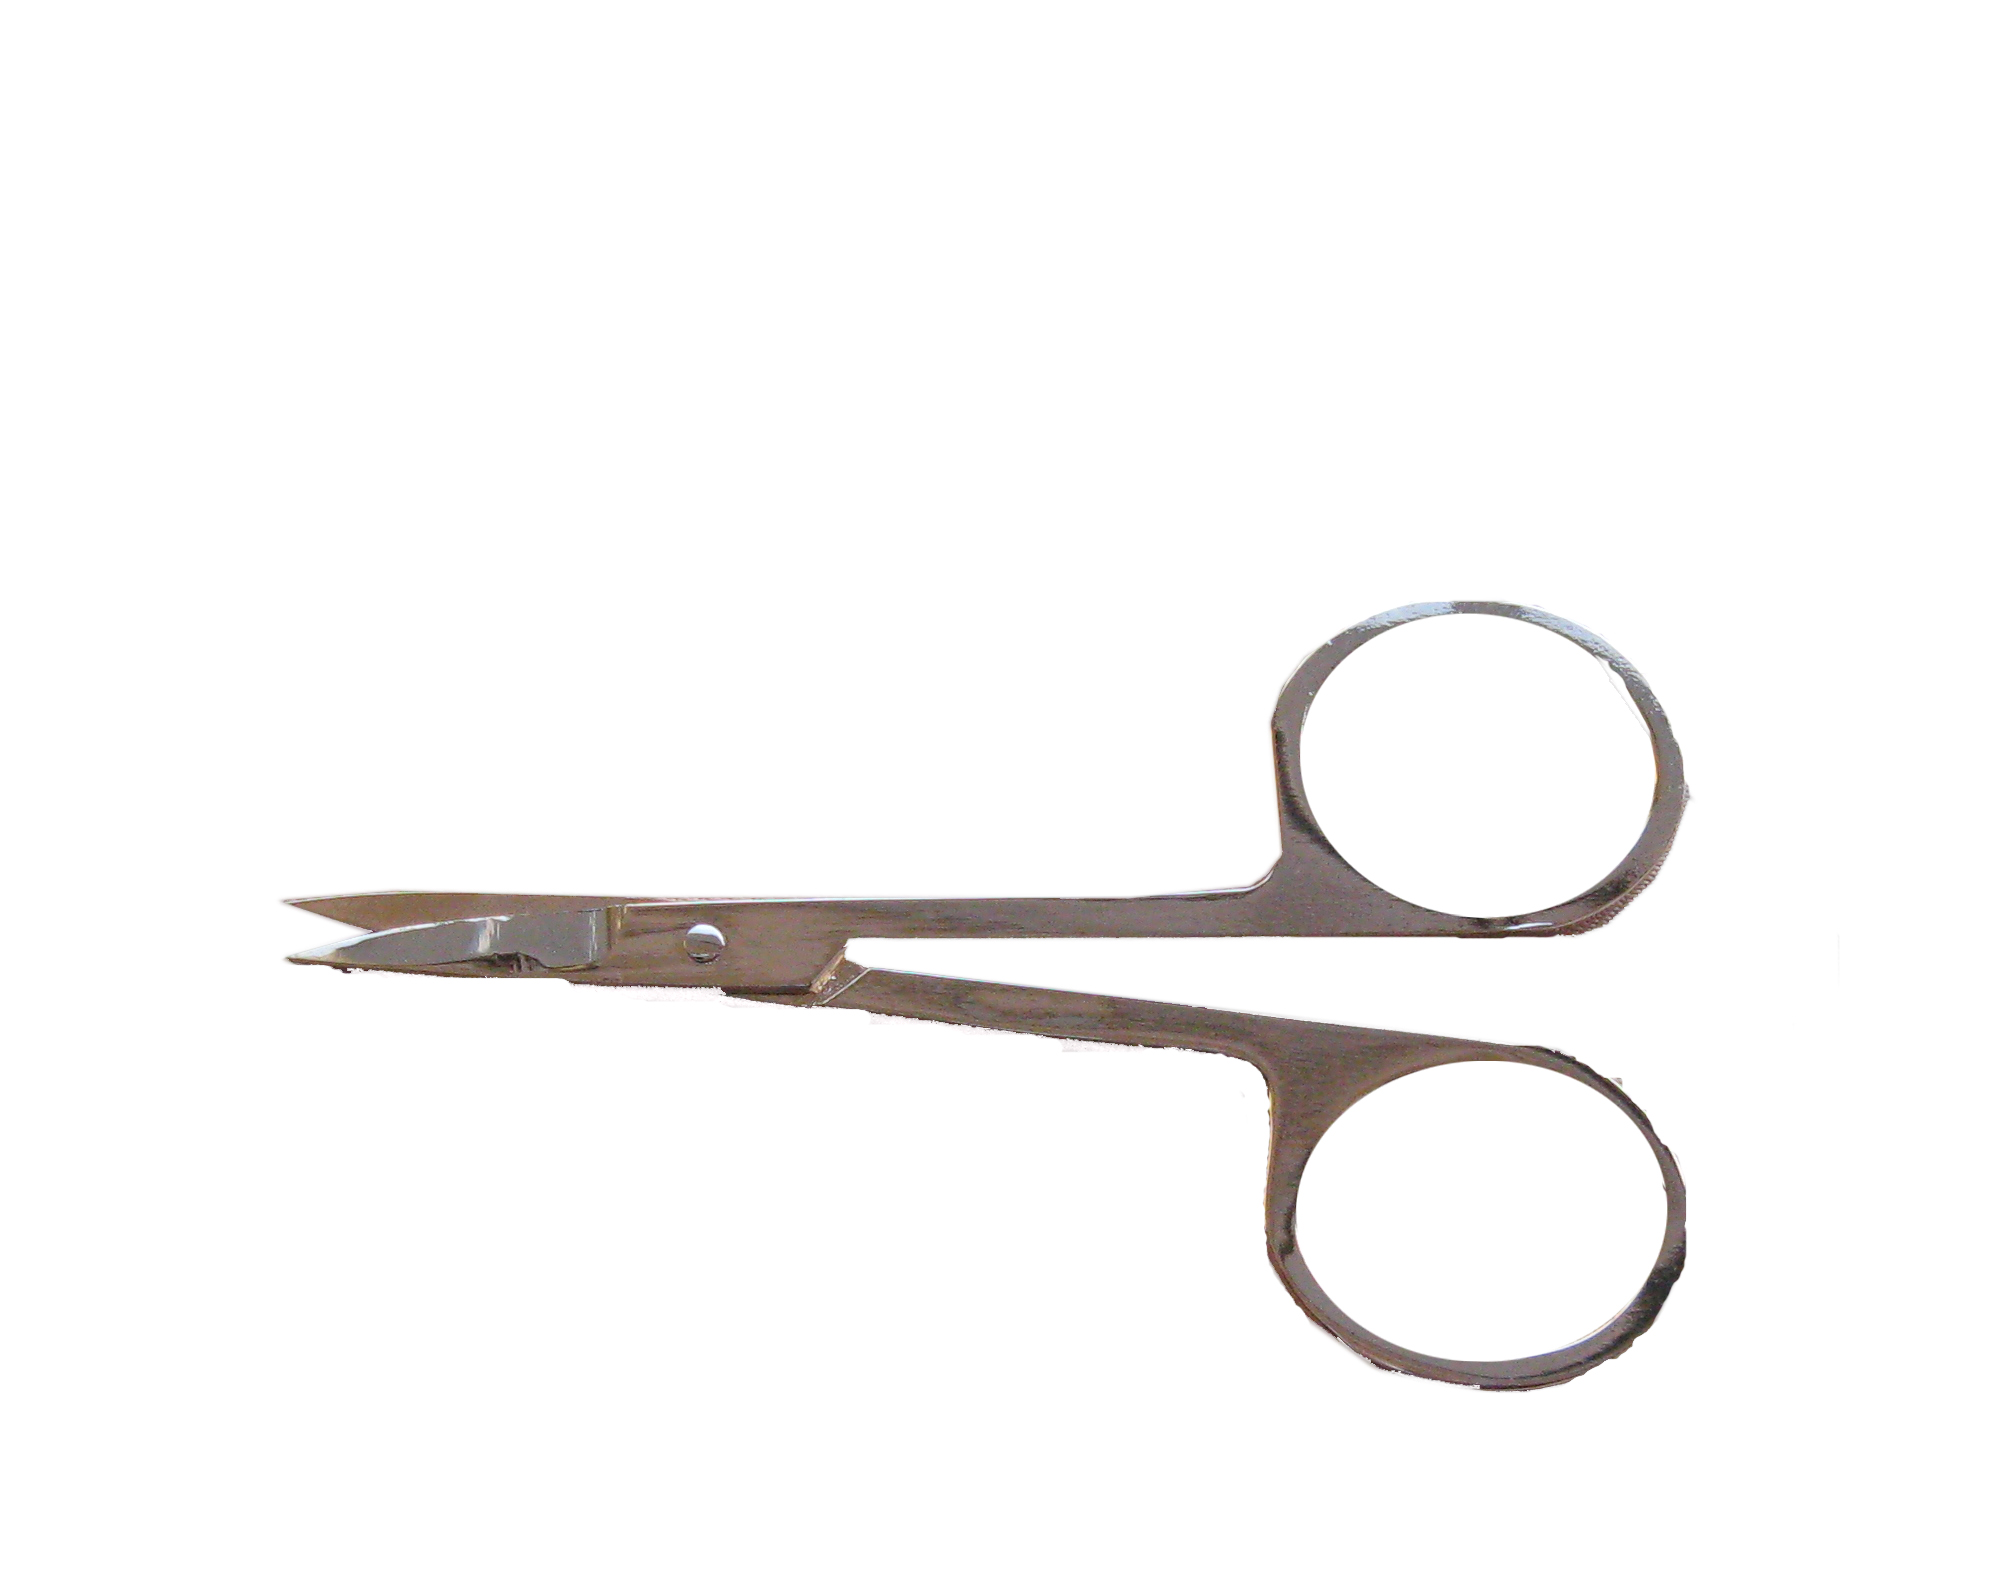 eyelash pro use scissors